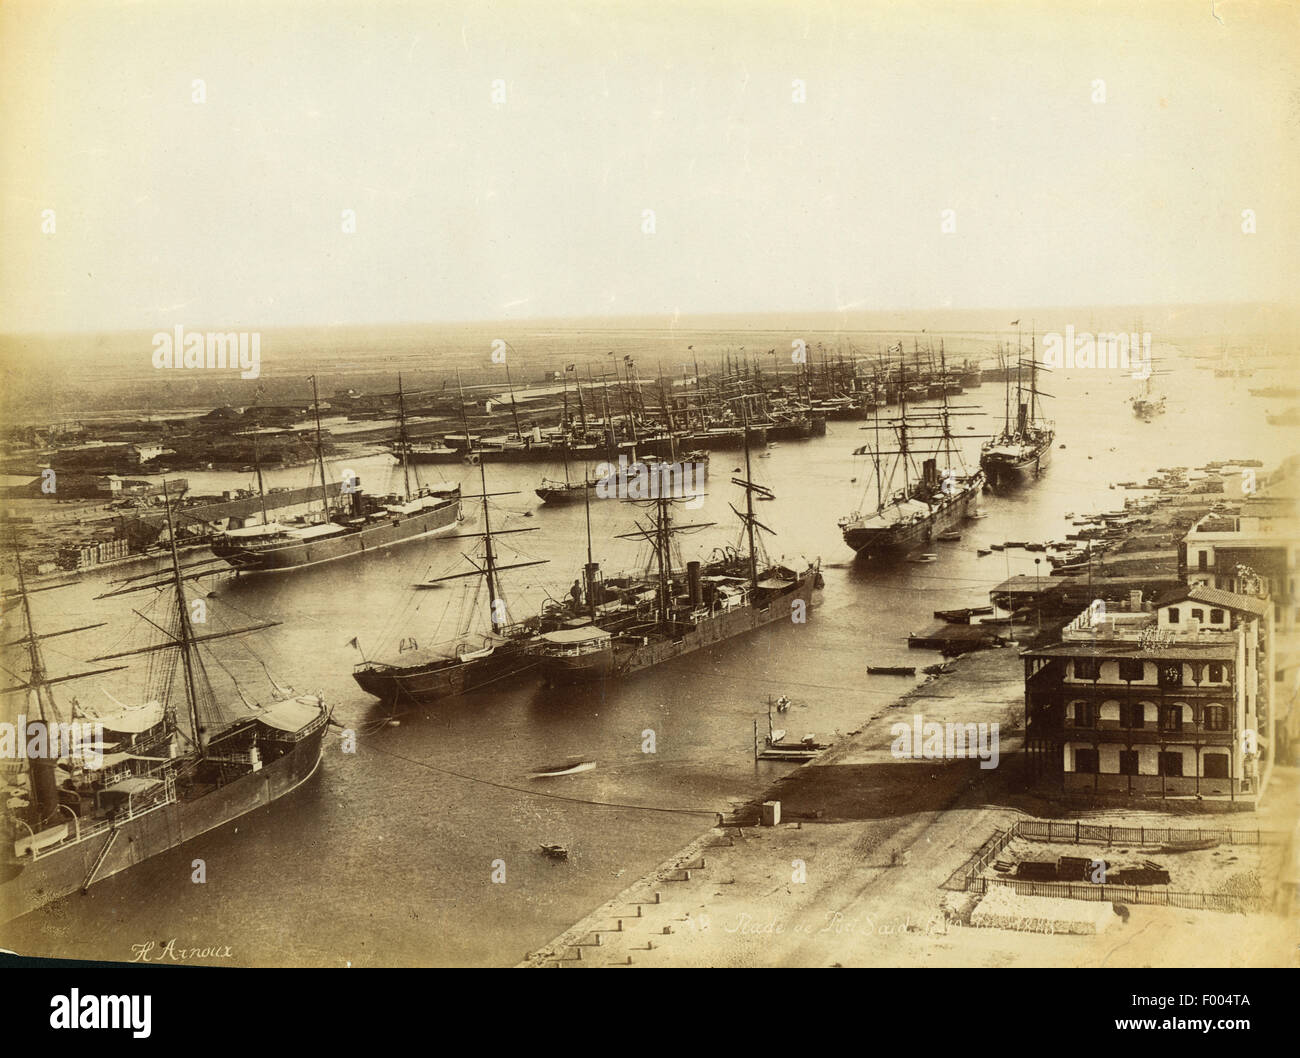 Port Said, Ägypten Ñ 1880er Jahre Ñ Dampfschiffe in Port Said, an der Mündung des Suez-Kanals am Mittelmeer, ein Blick auf den Hafen verankert.  Foto von Arnoux COPYRIGHT Fotosammlung von BARRY IVERSON Stockfoto